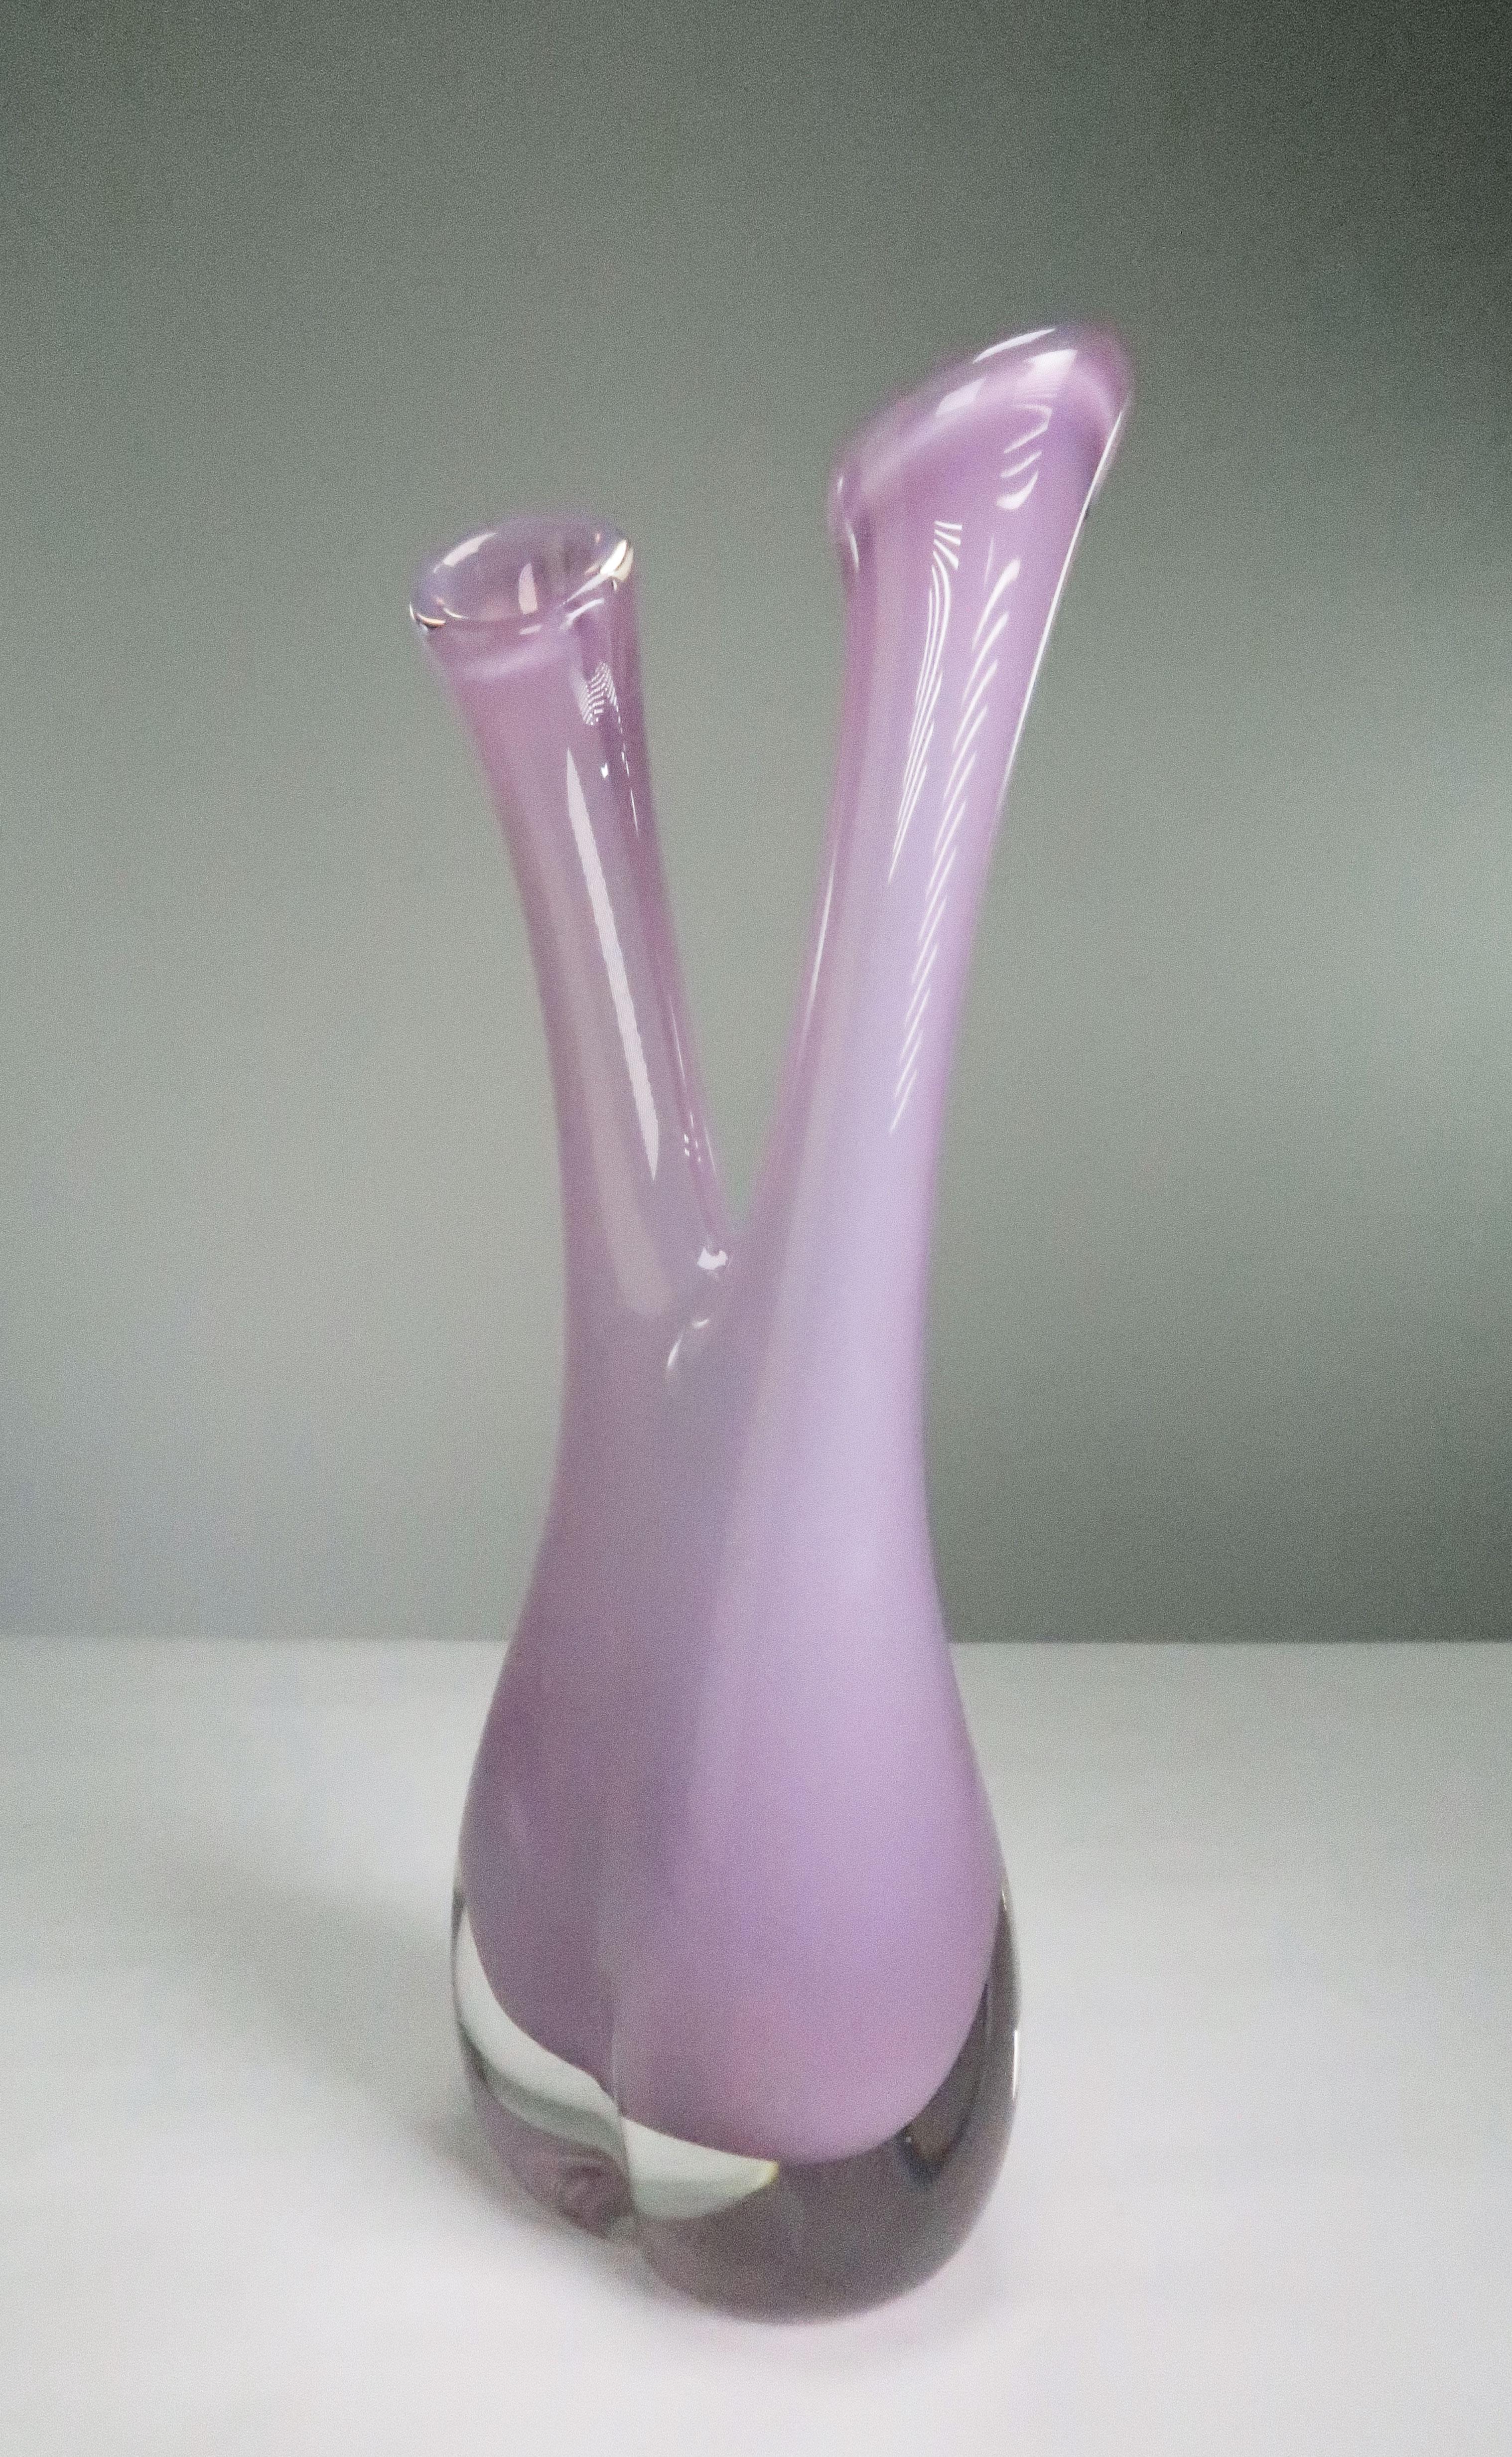 Délicat et étonnant vase suédois en verre d'art soufflé à la bouche du milieu du siècle dernier, avec deux cols et une base arrondie épaisse et solide. Verre de couleur rose pâle, rose orchidée enfermé dans un verre transparent. Créé et fabriqué par